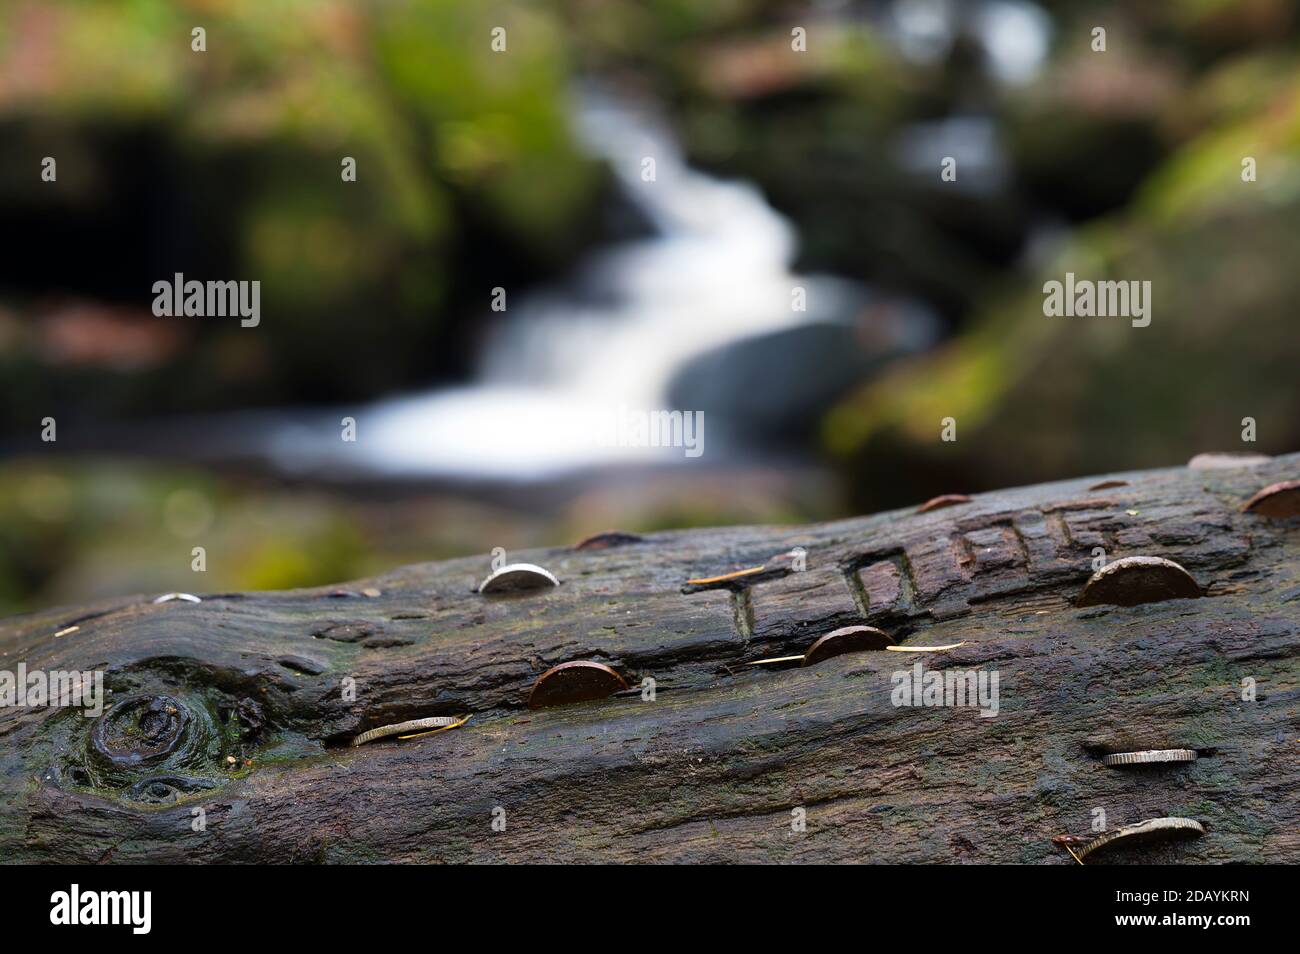 Der Wunschbaum in der Padley Gorge im Peak District. Die Leute haben Münzen in die Maserung des Holzes für einen Glückswunsch gehämmert. Stockfoto